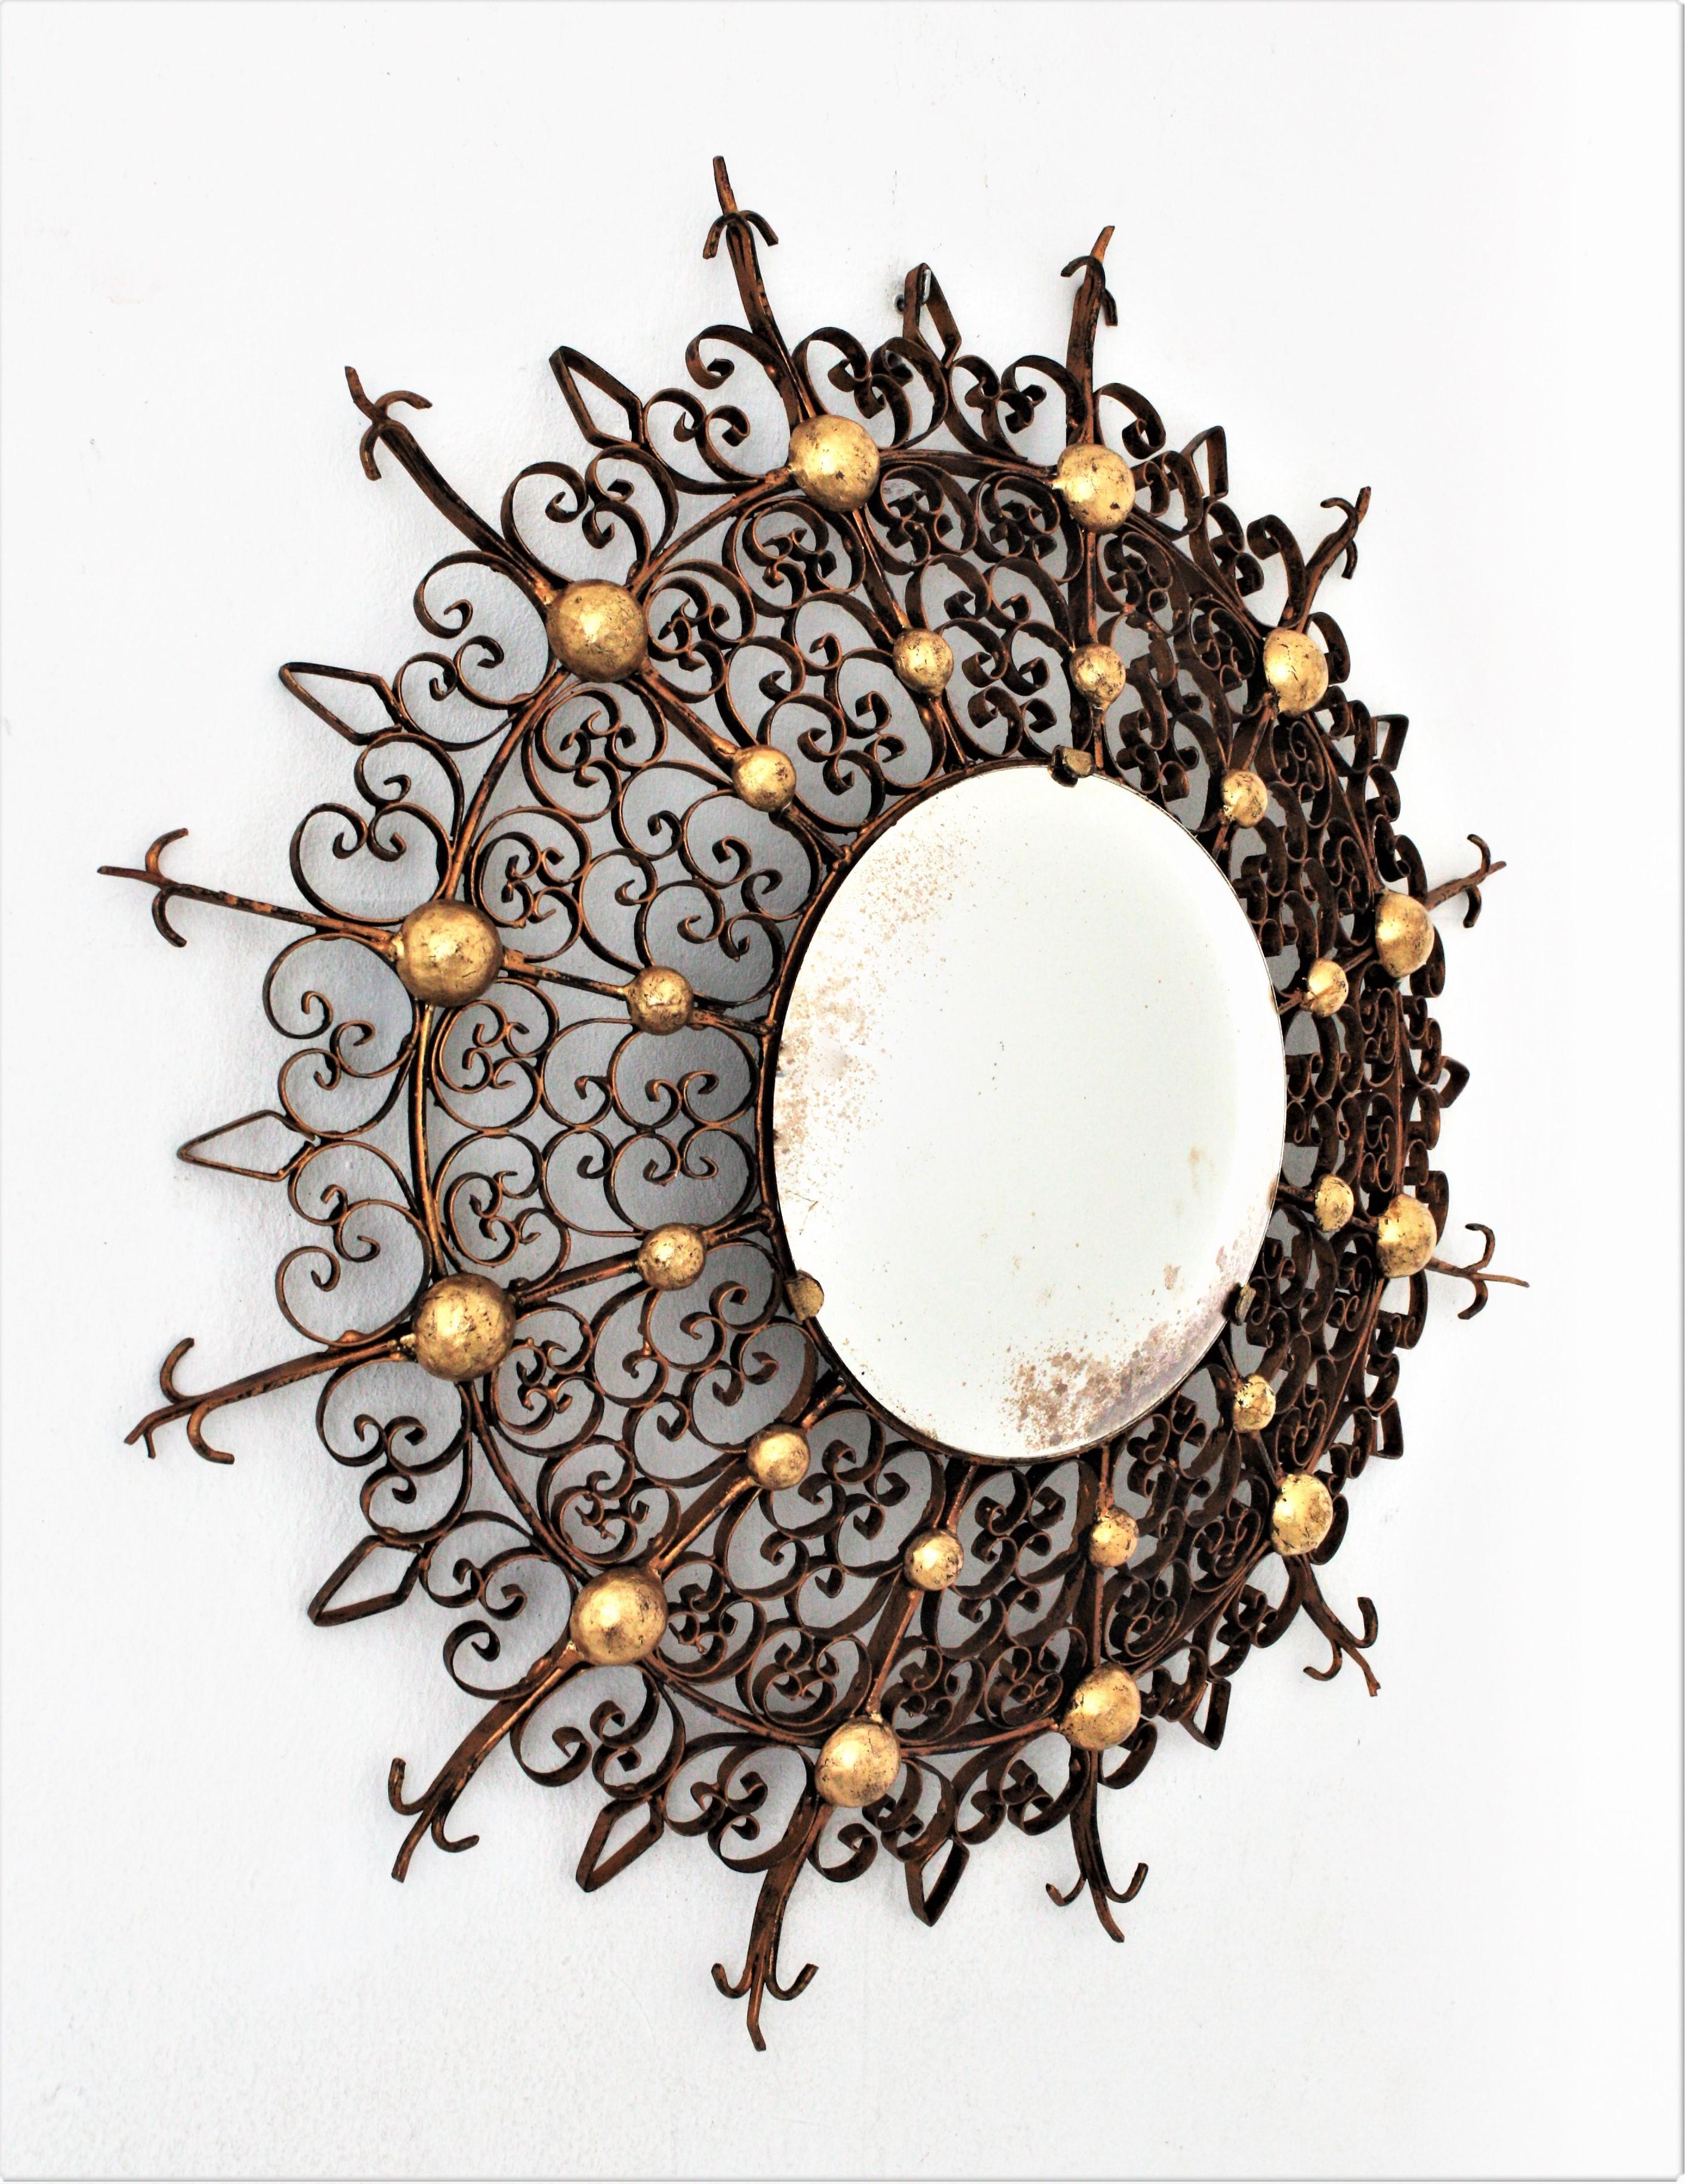 Beeindruckender, handgefertigter Spiegel aus vergoldetem Eisen mit Sonnenschliff und konvexem Rahmen und vergoldeten Kugelakzenten im Stil der Gotik. Frankreich, 1930er-1940er Jahre.
Der Rahmen besteht aus einer filigranen Verzierung mit